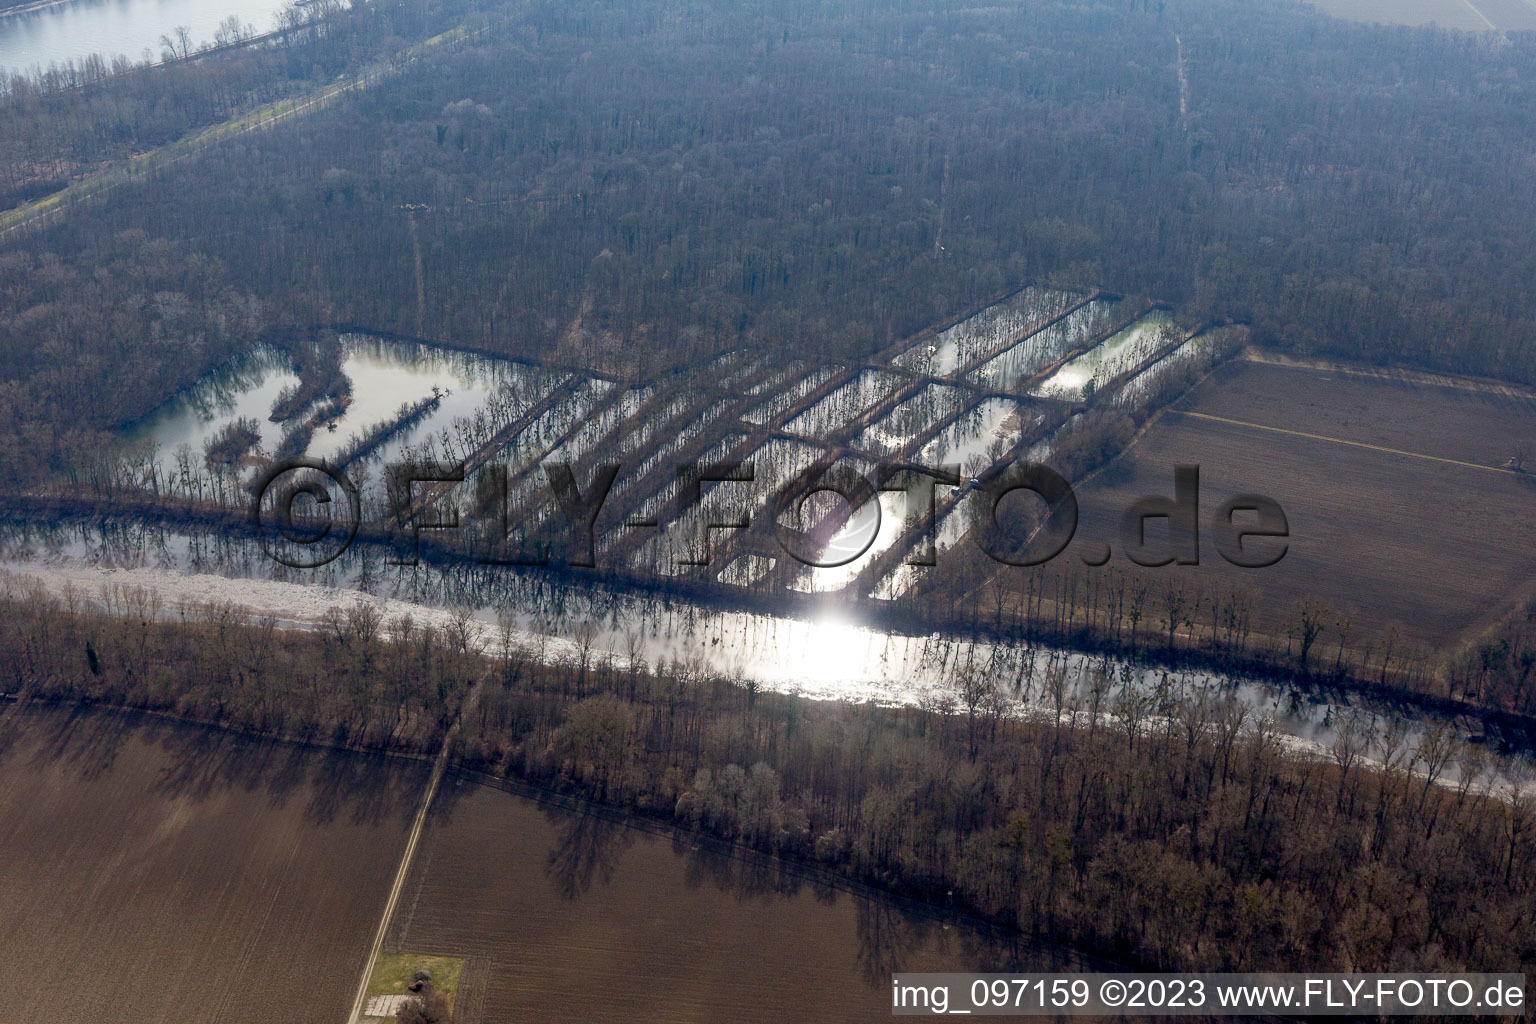 Ortsteil Sondernheim in Germersheim im Bundesland Rheinland-Pfalz, Deutschland von der Drohne aus gesehen